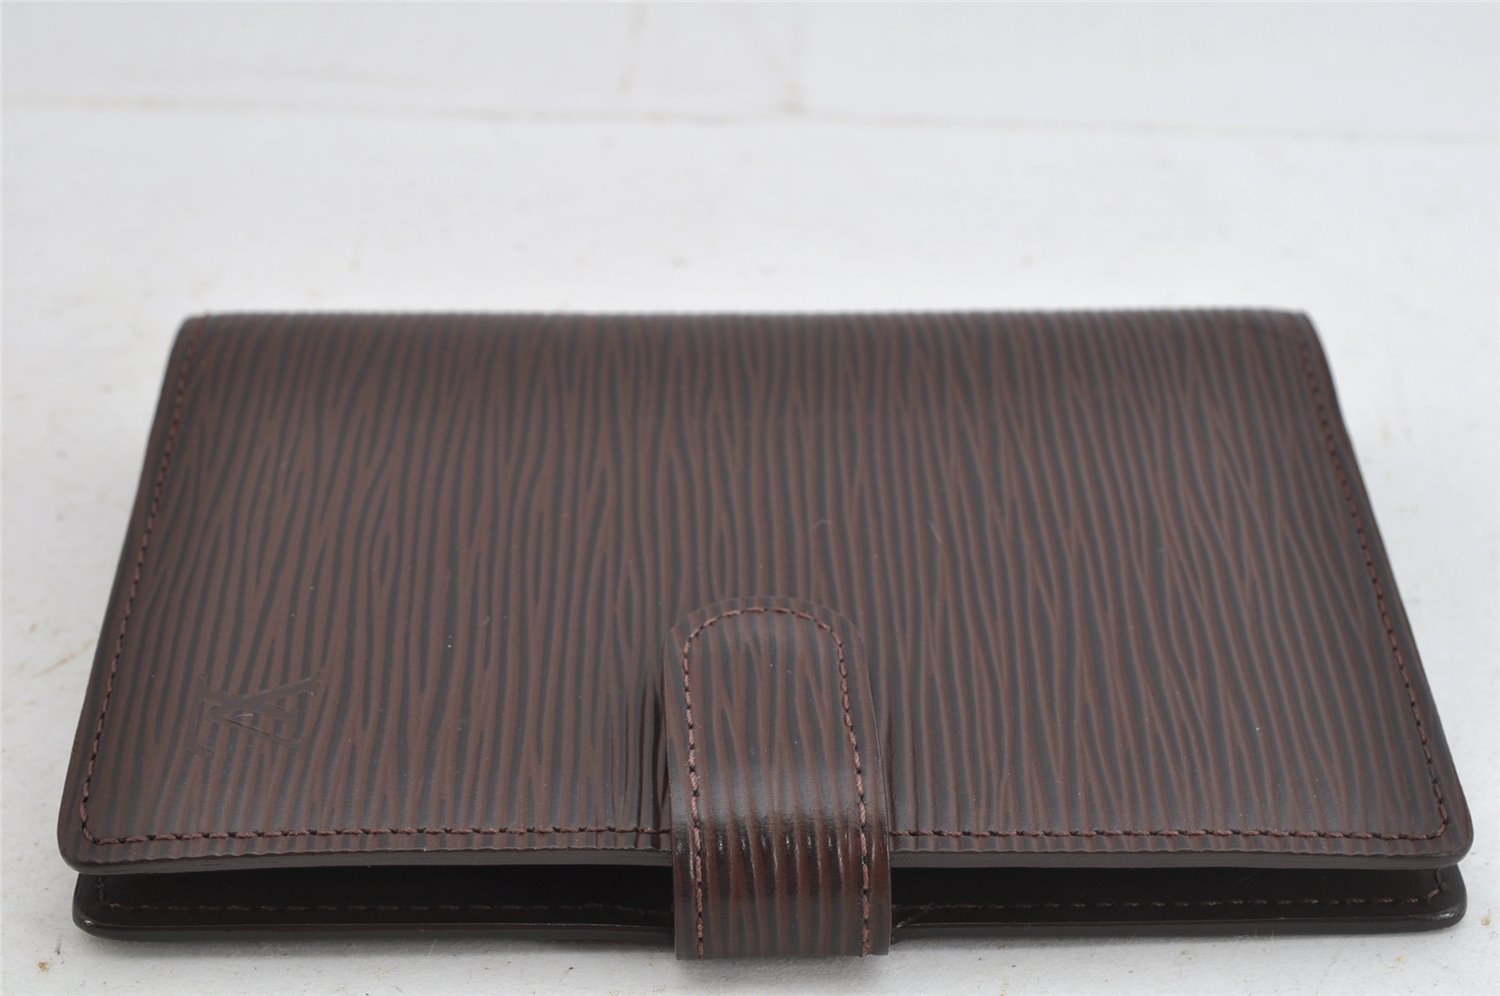 Authentic Louis Vuitton Epi Agenda PM Notebook Cover Brown R2005D LV 8874J